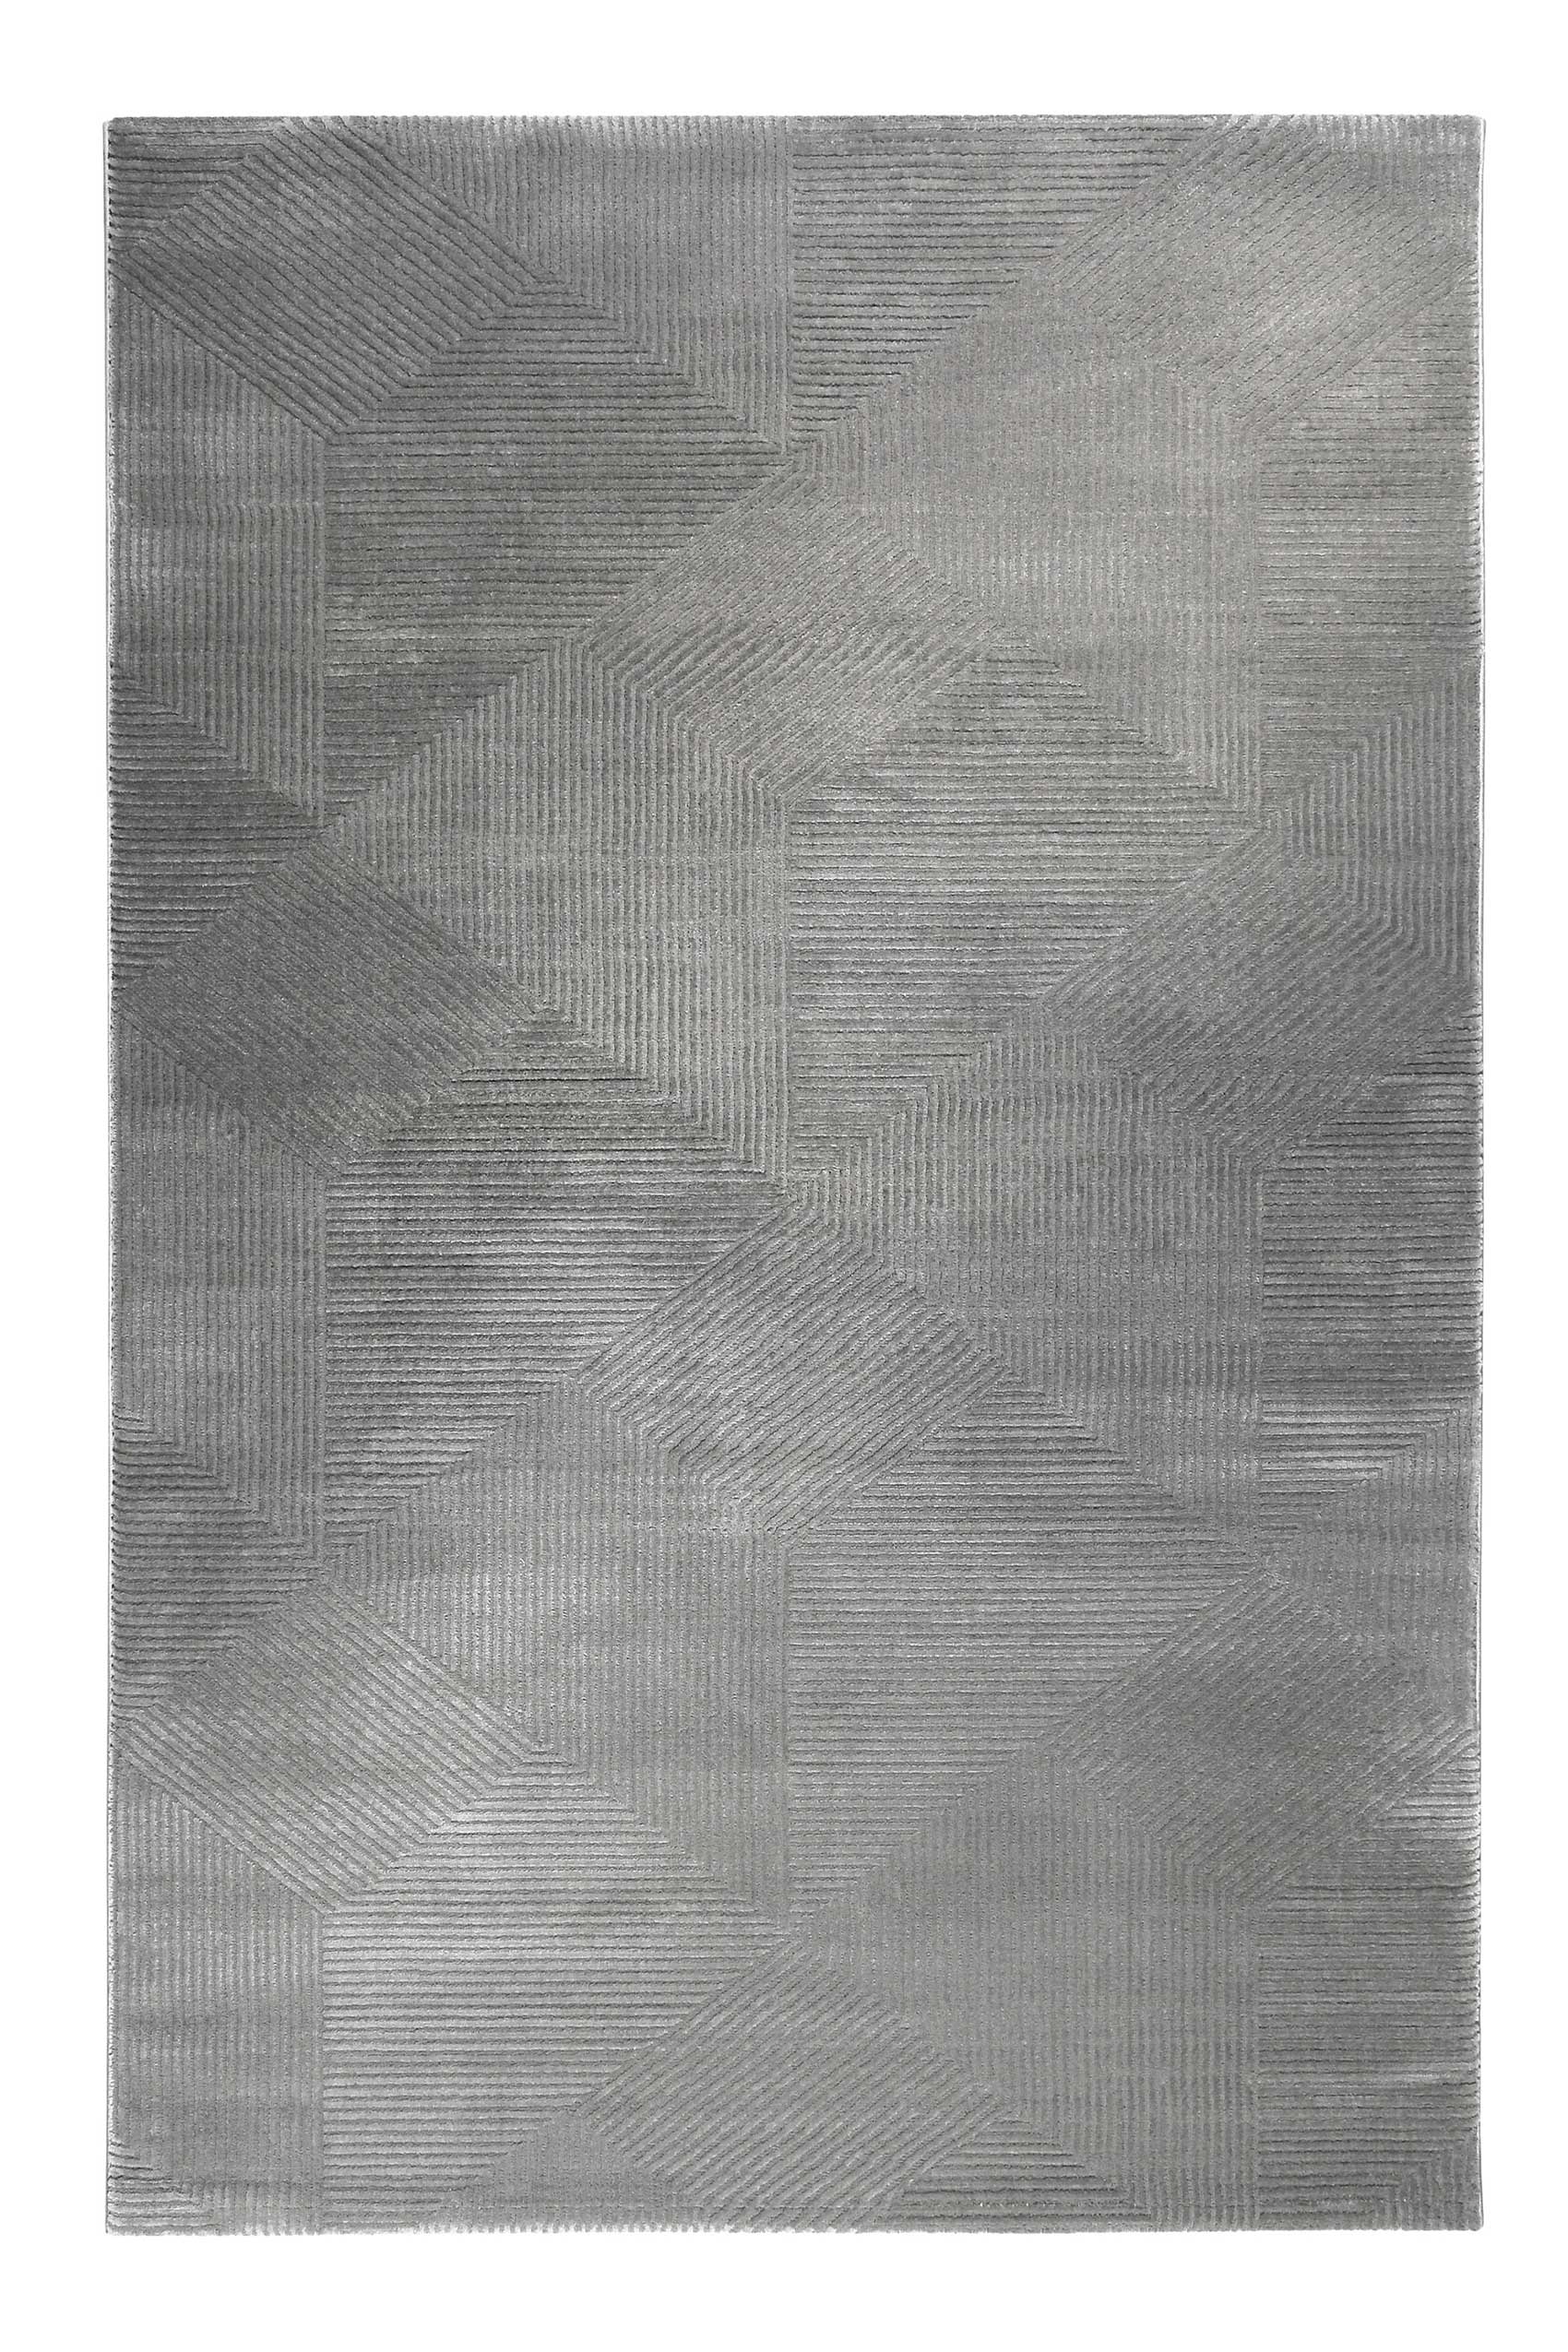 Tapis motif géométrique à relief gris taupe 225x160